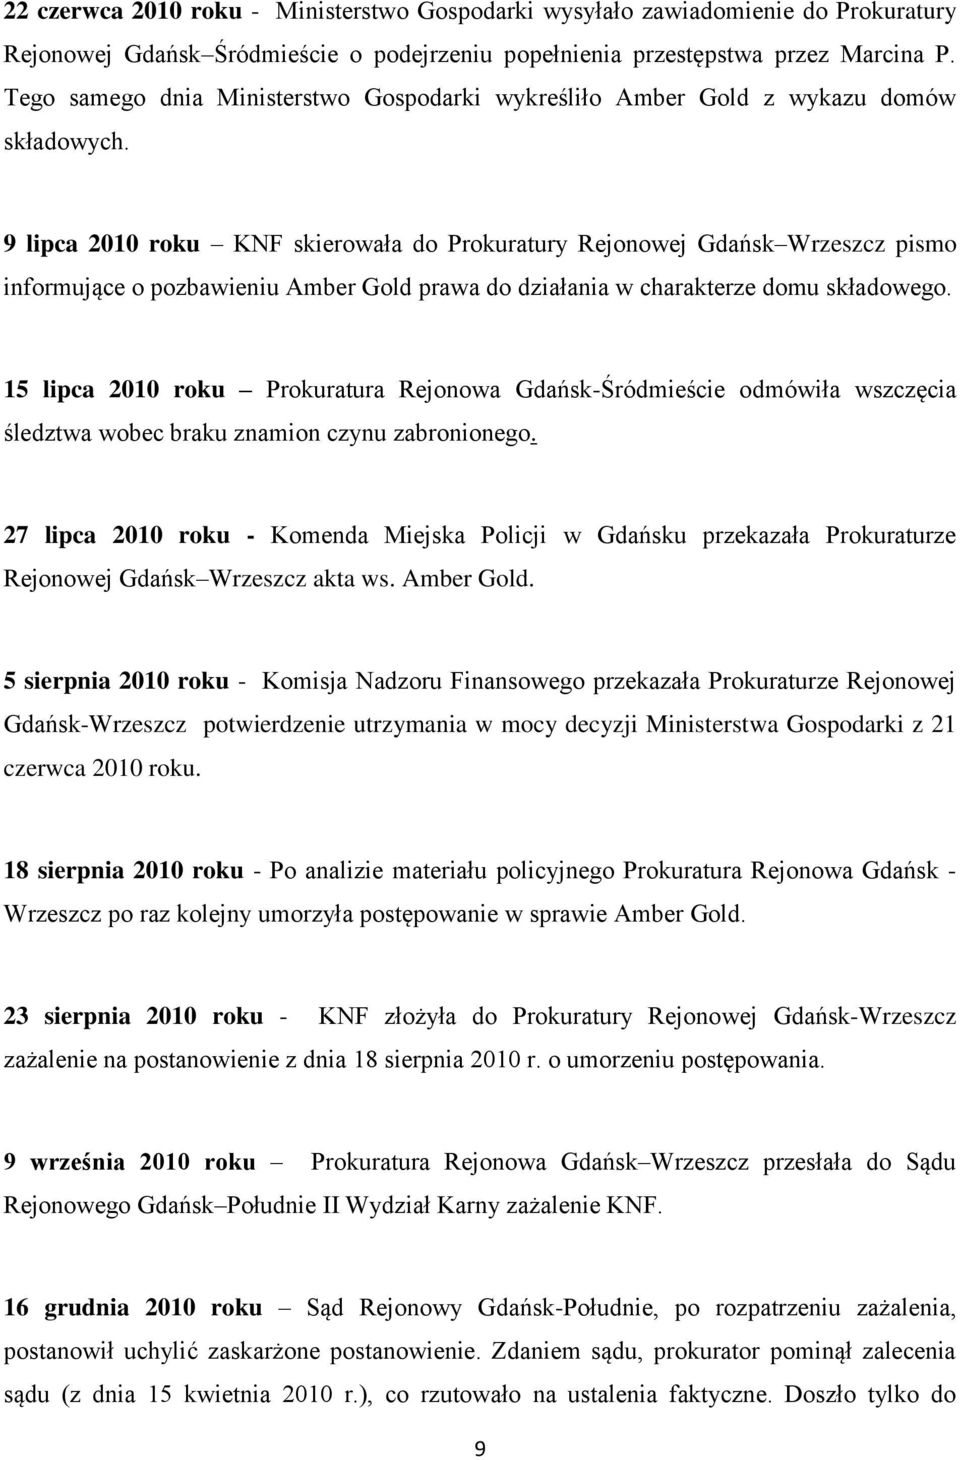 9 lipca 2010 roku KNF skierowała do Prokuratury Rejonowej Gdańsk Wrzeszcz pismo informujące o pozbawieniu Amber Gold prawa do działania w charakterze domu składowego.